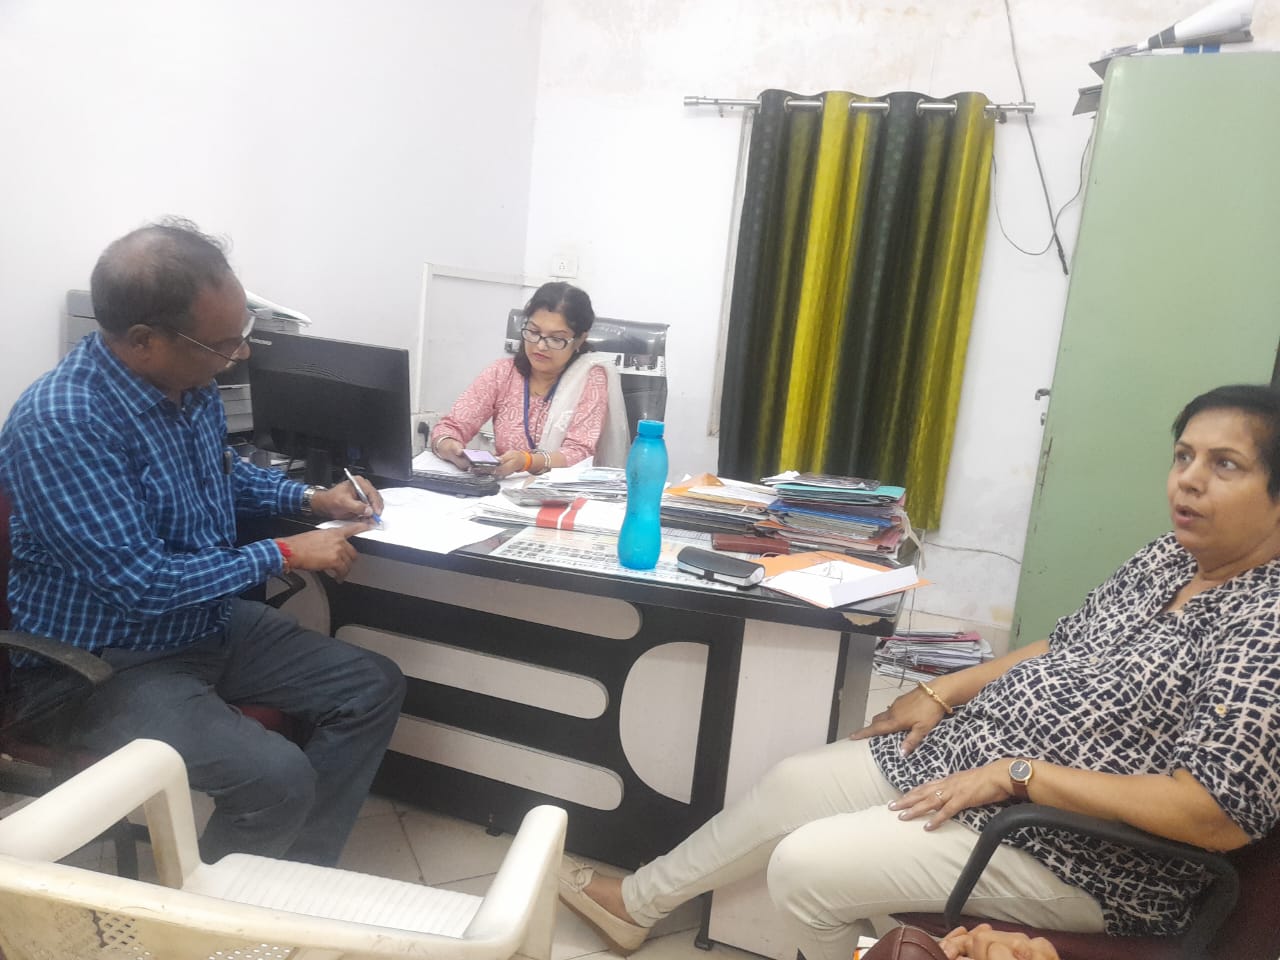 जबलपुर : जिला अस्पताल में लोकायुक्त की कार्रवाई, महिला लेखा प्रबंधक को रिश्वत लेते पकड़ा